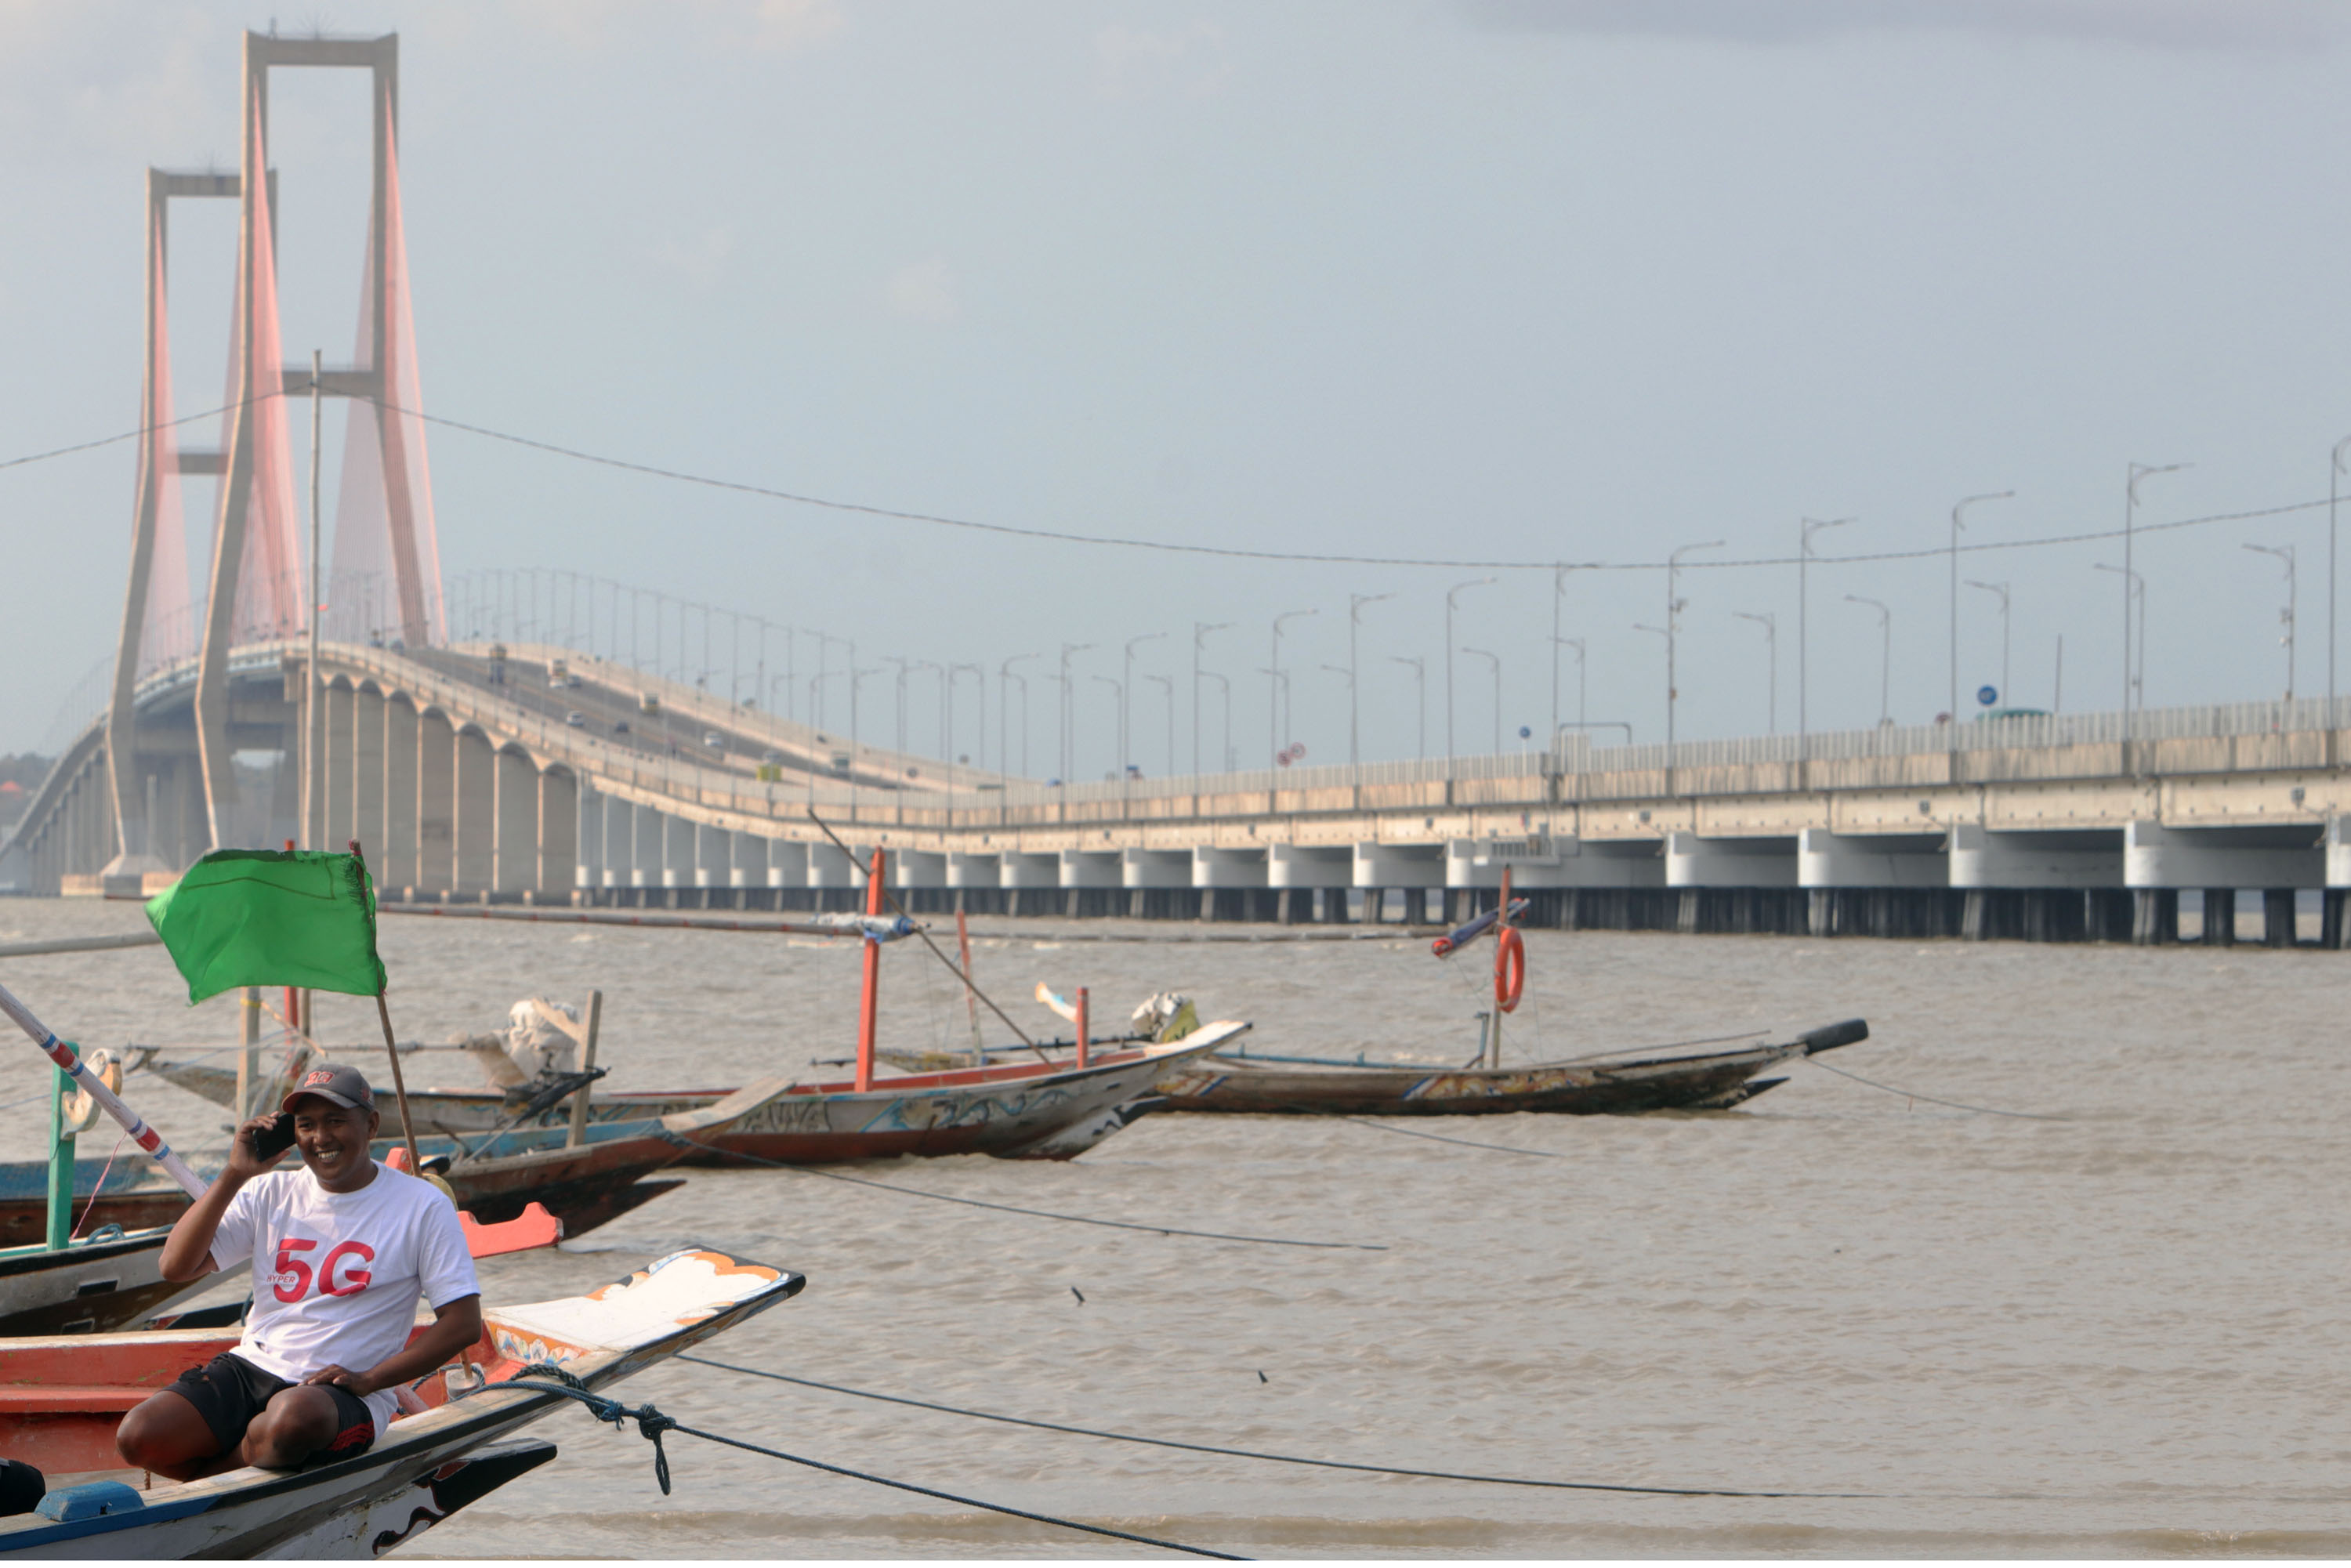 JARINGAN LANCAR: Nelayan di kawasan pesisir pantai Surabaya (kaki jembatan Suramadu), melakukan panggilan kepada kerabatnya, Rabu (8/9). Jaringan telkomsel 5G diharapkan bisa menghadirkan akses konektivitas digital terdepan (Foto / Yuan / Medcom.id)